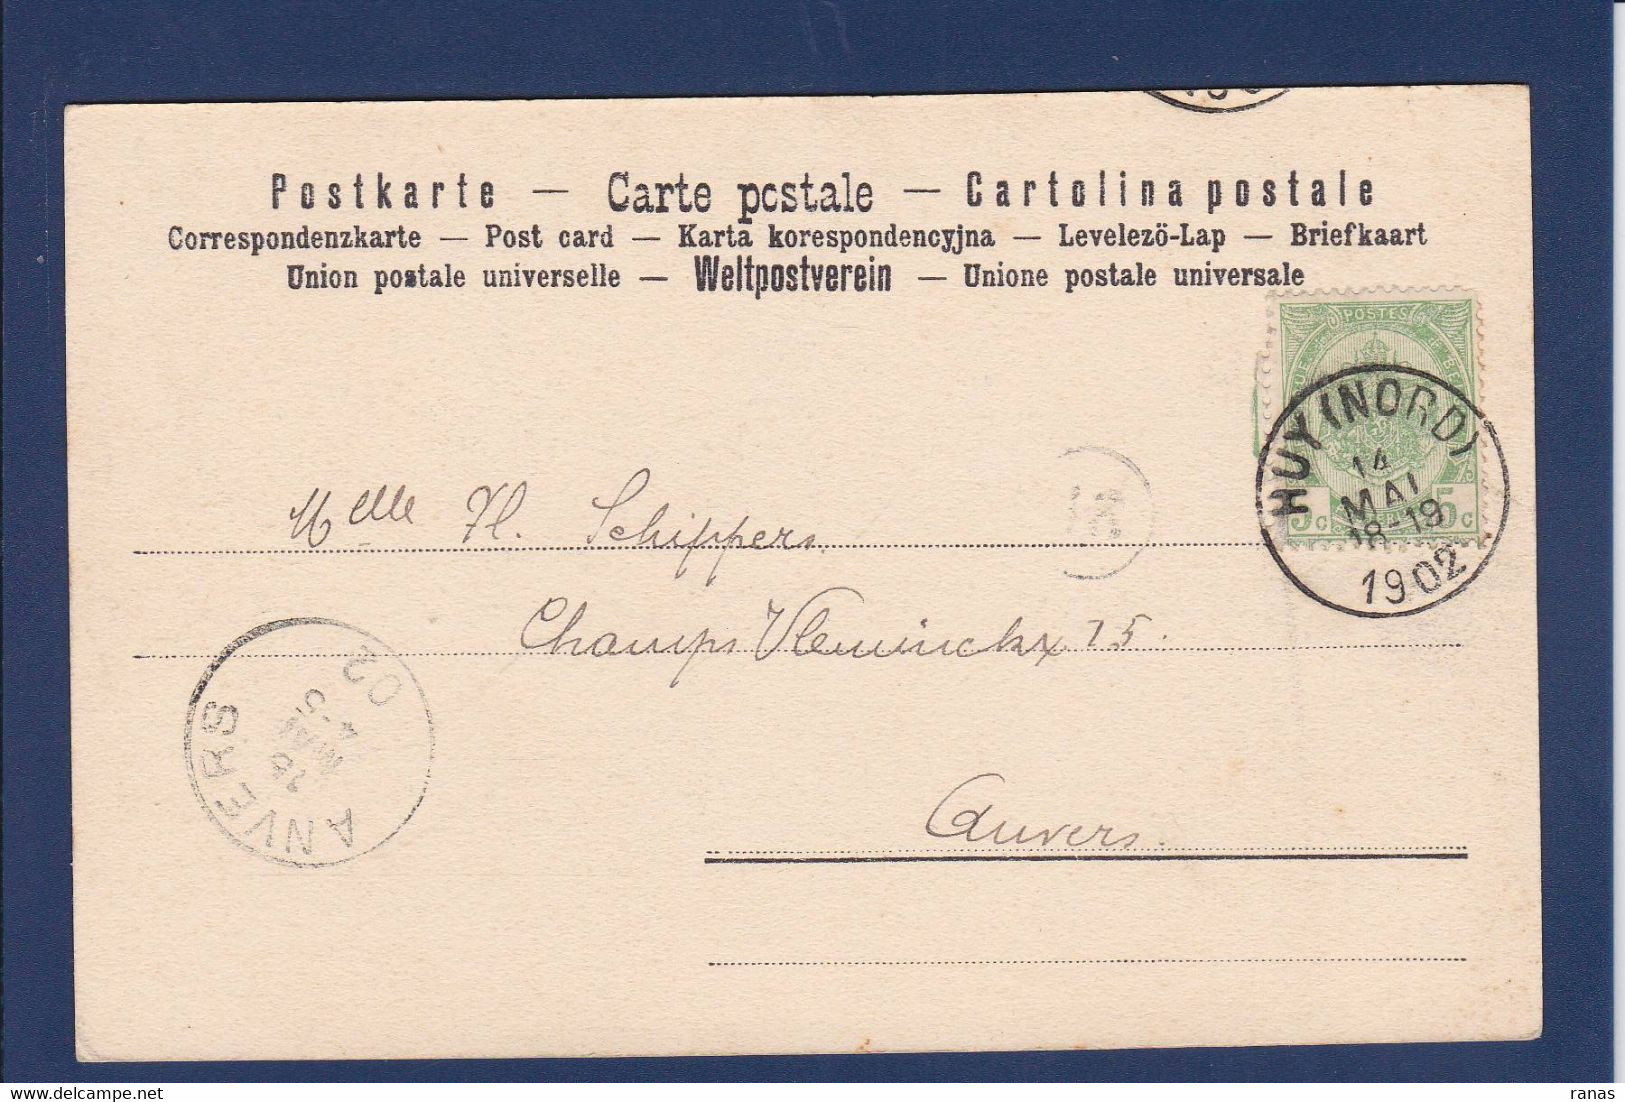 CPA Belgique > Anvers Catastrophe De Corvilain Huy 1889 Circulé Voir Dos - Other & Unclassified